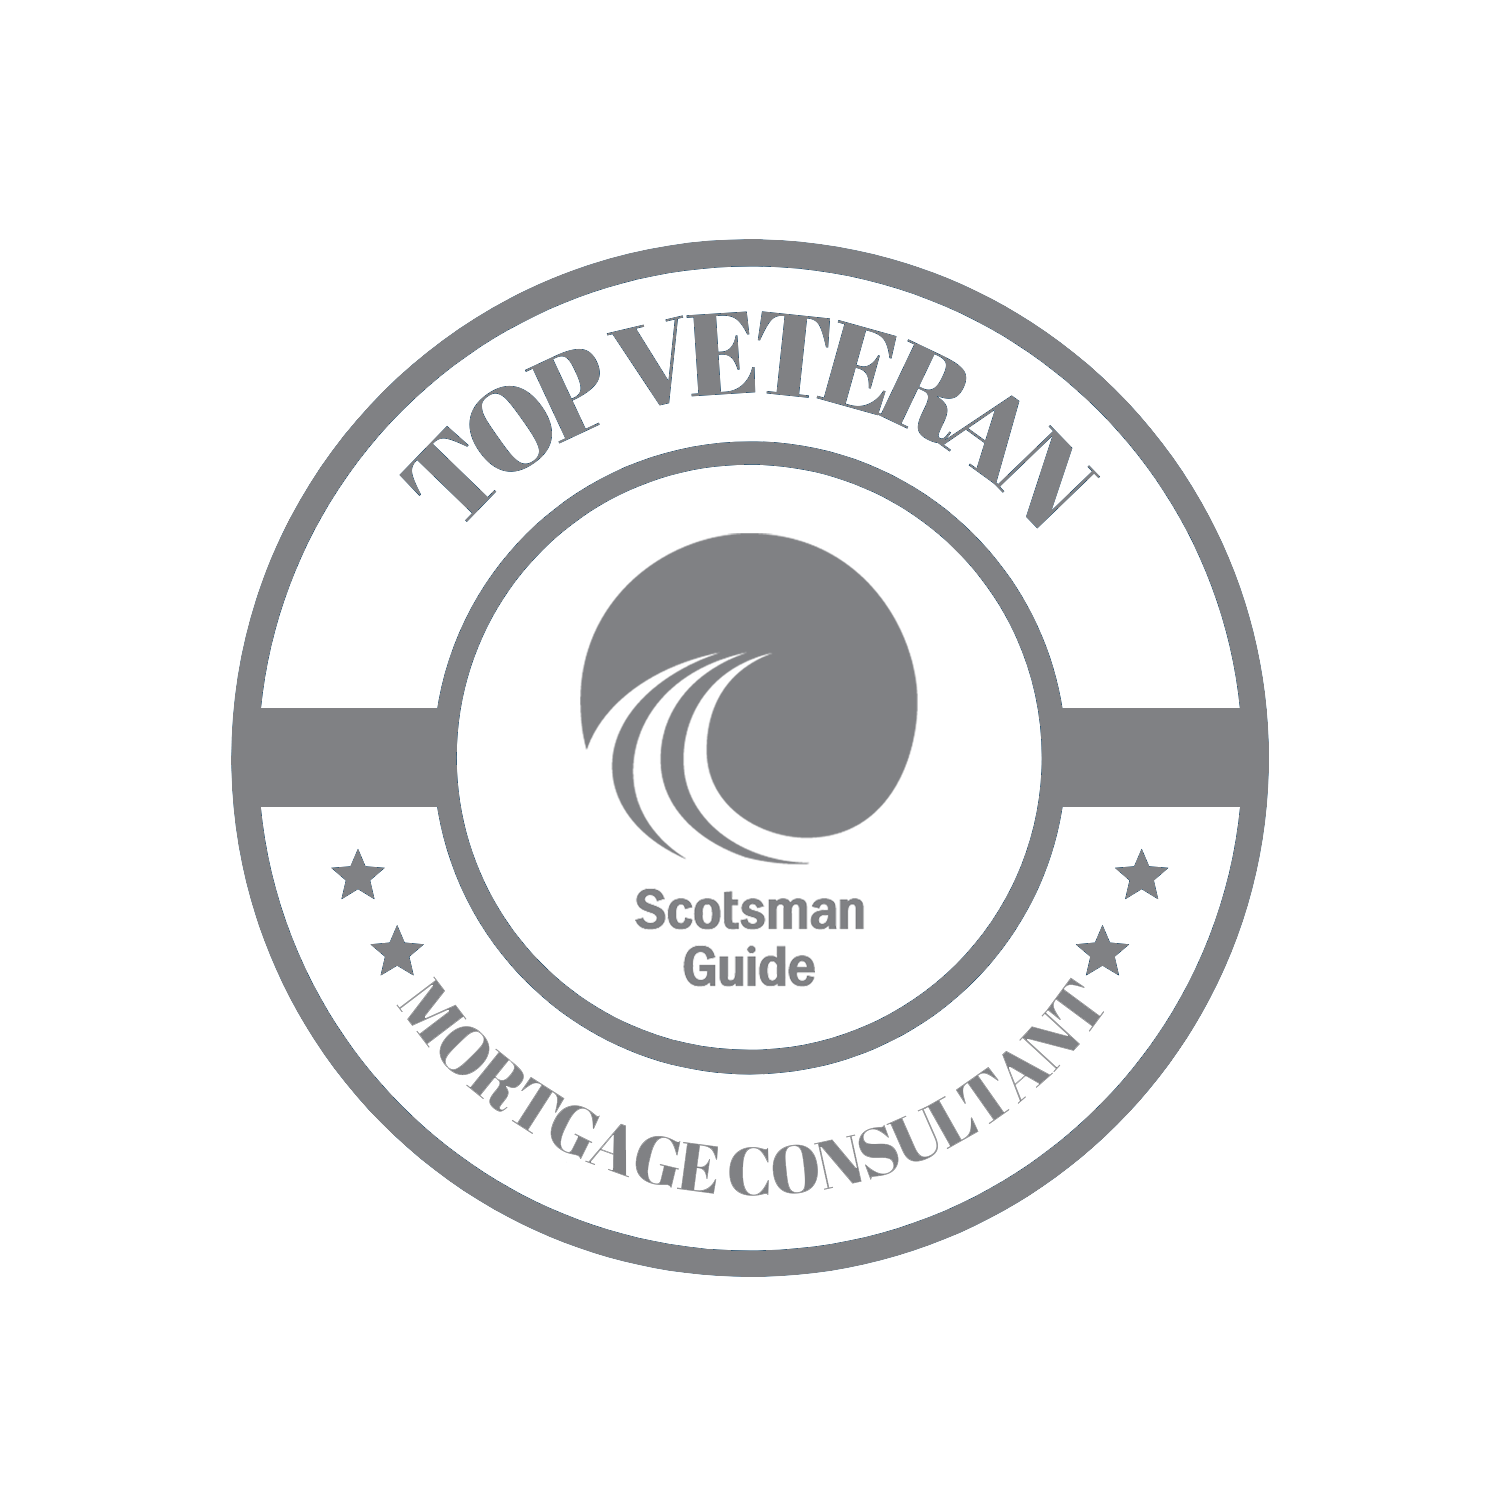 Top Veteran Logo